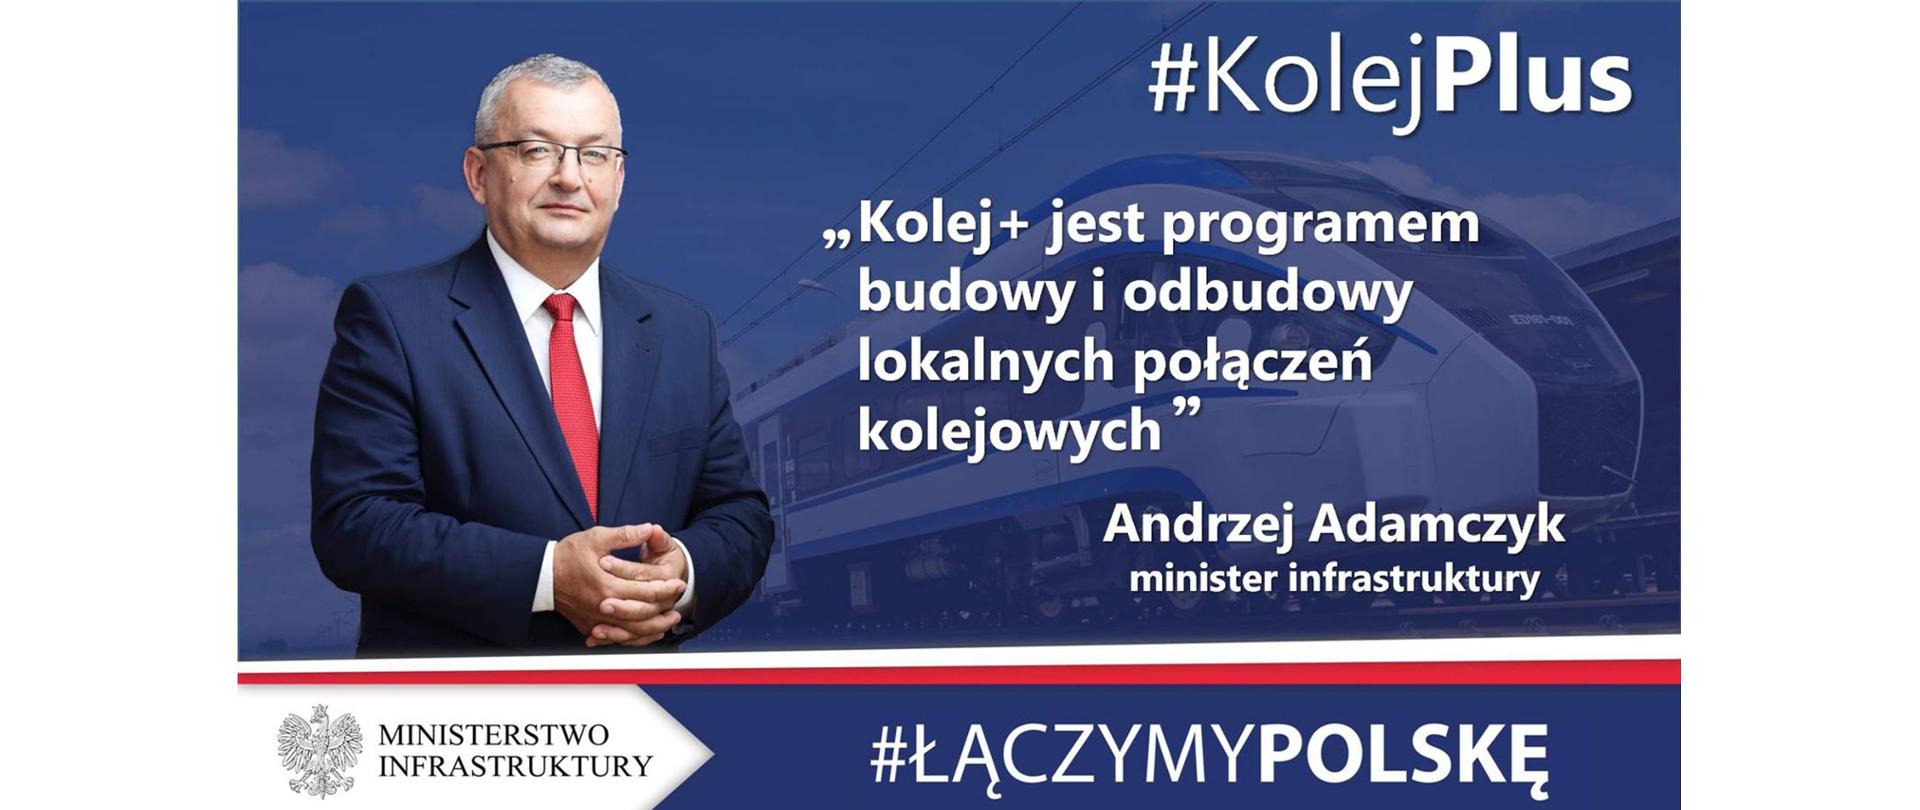 Infografika z cytatem ministra infrastruktury Andrzeja Adamczyka na temat programu Kolej Plus